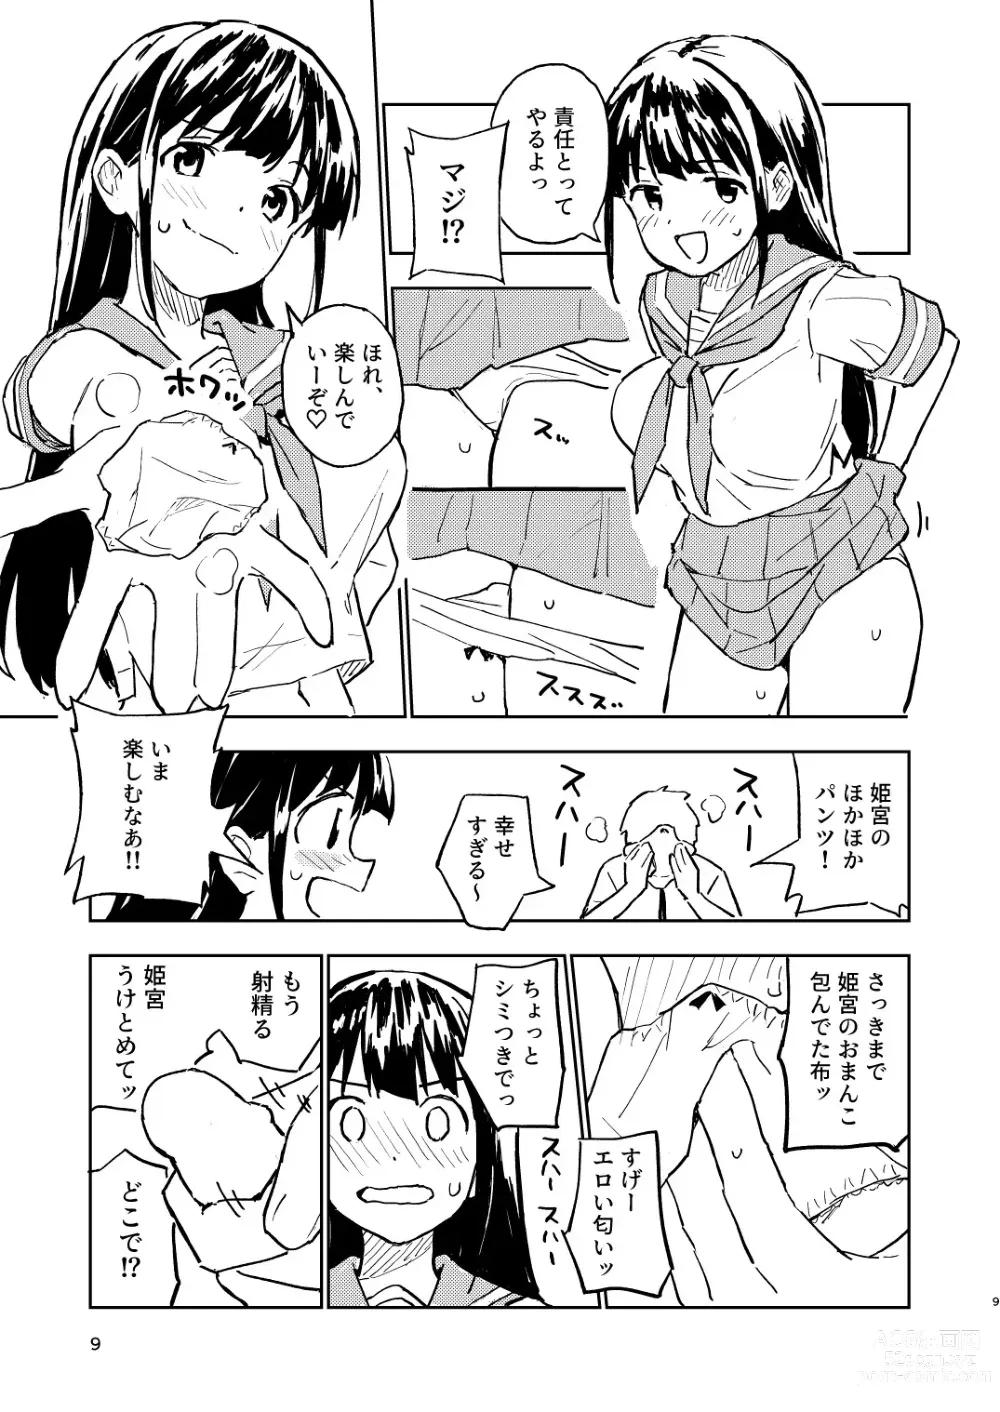 Page 9 of doujinshi 1-kagetsu Ninshin Shinakereba Otoko ni Modoreru Hanashi